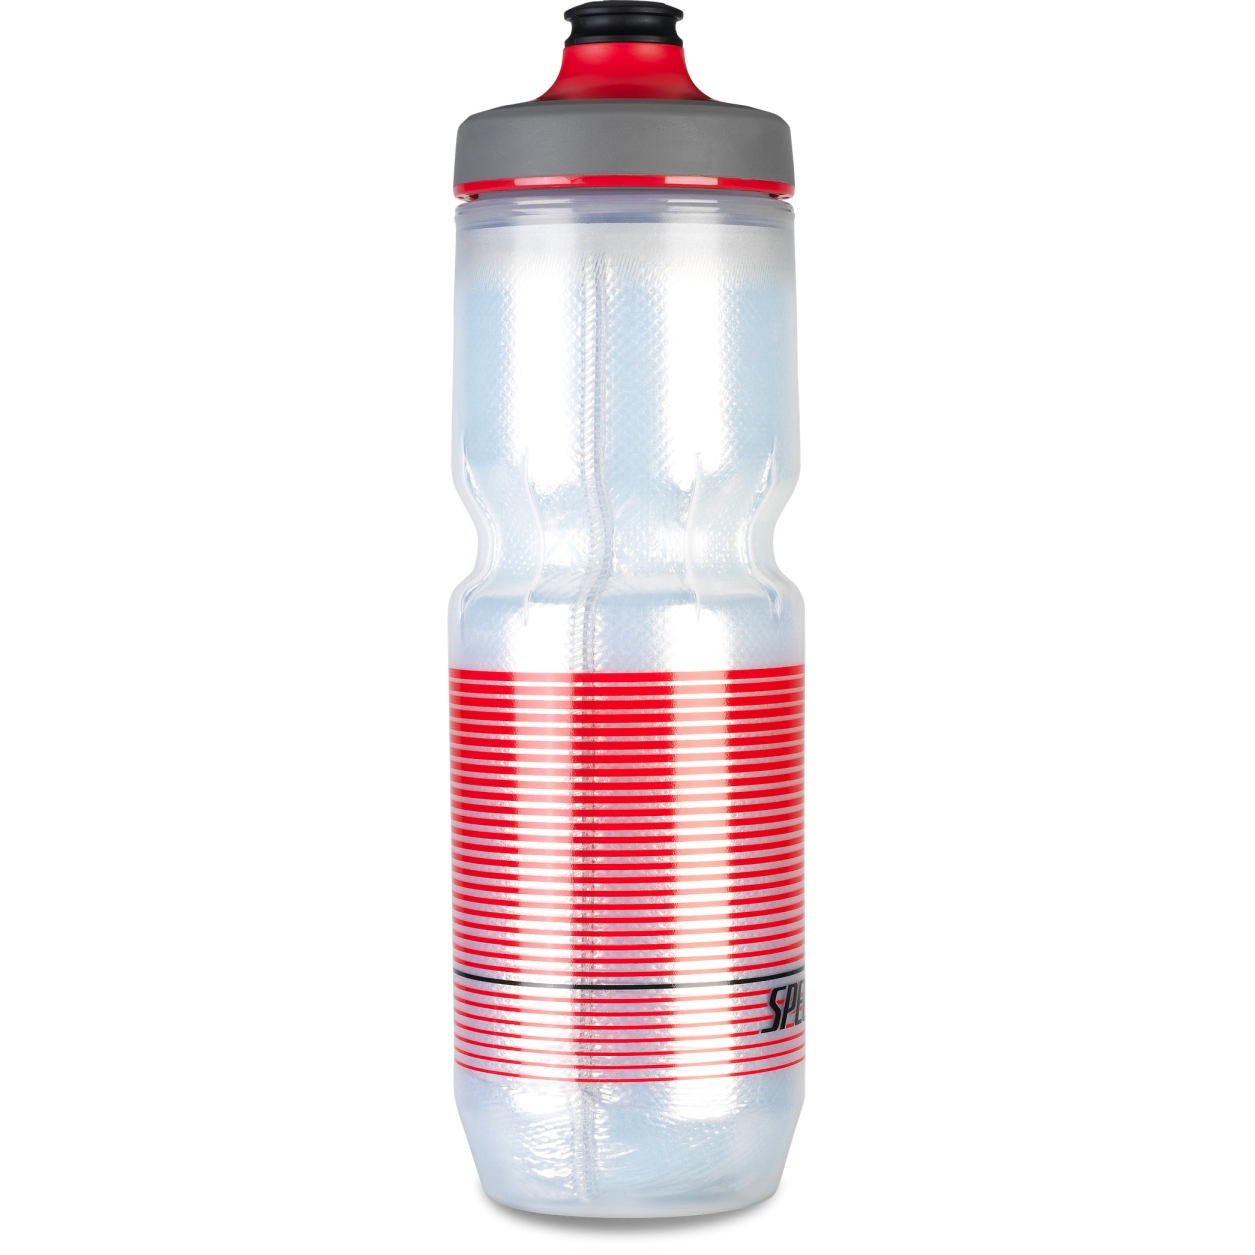 Produktbild von Specialized Purist Insulated Watergate Trinkflasche 680ml - Translucent/Black/Red Straight Away